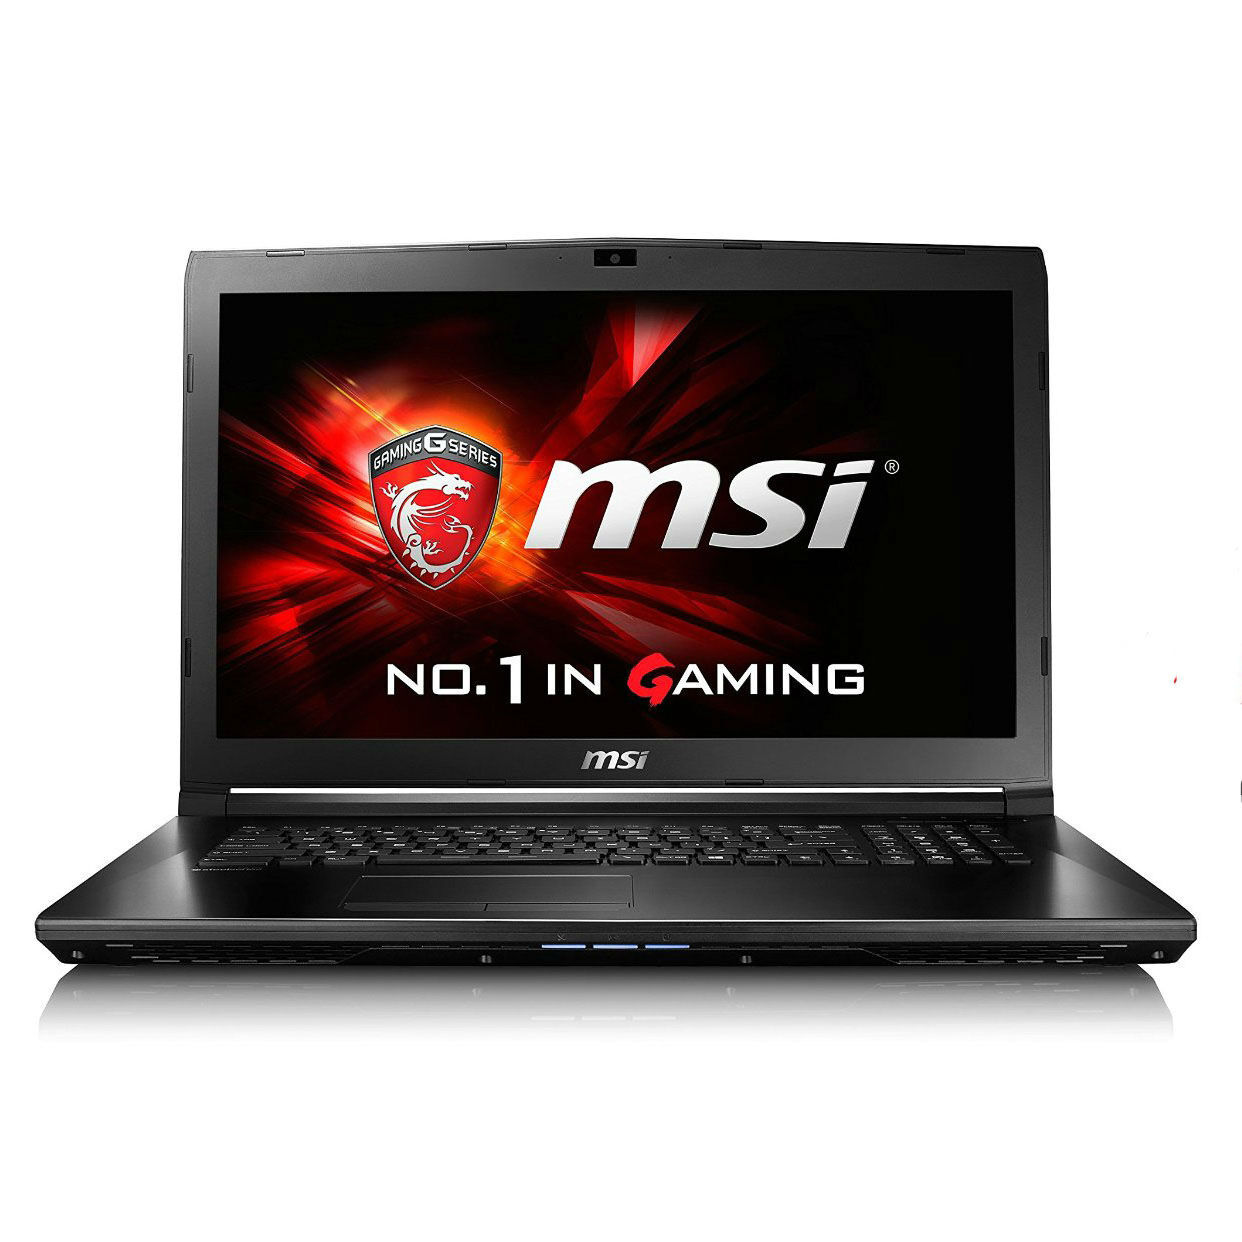 Laptop MSI GL72 6QF 620XVN - Intel core i7, 8GB RAM, HDD 1TB, Nvidia Geforce GTX 960M 2GB GDDR5, 17.3 inch